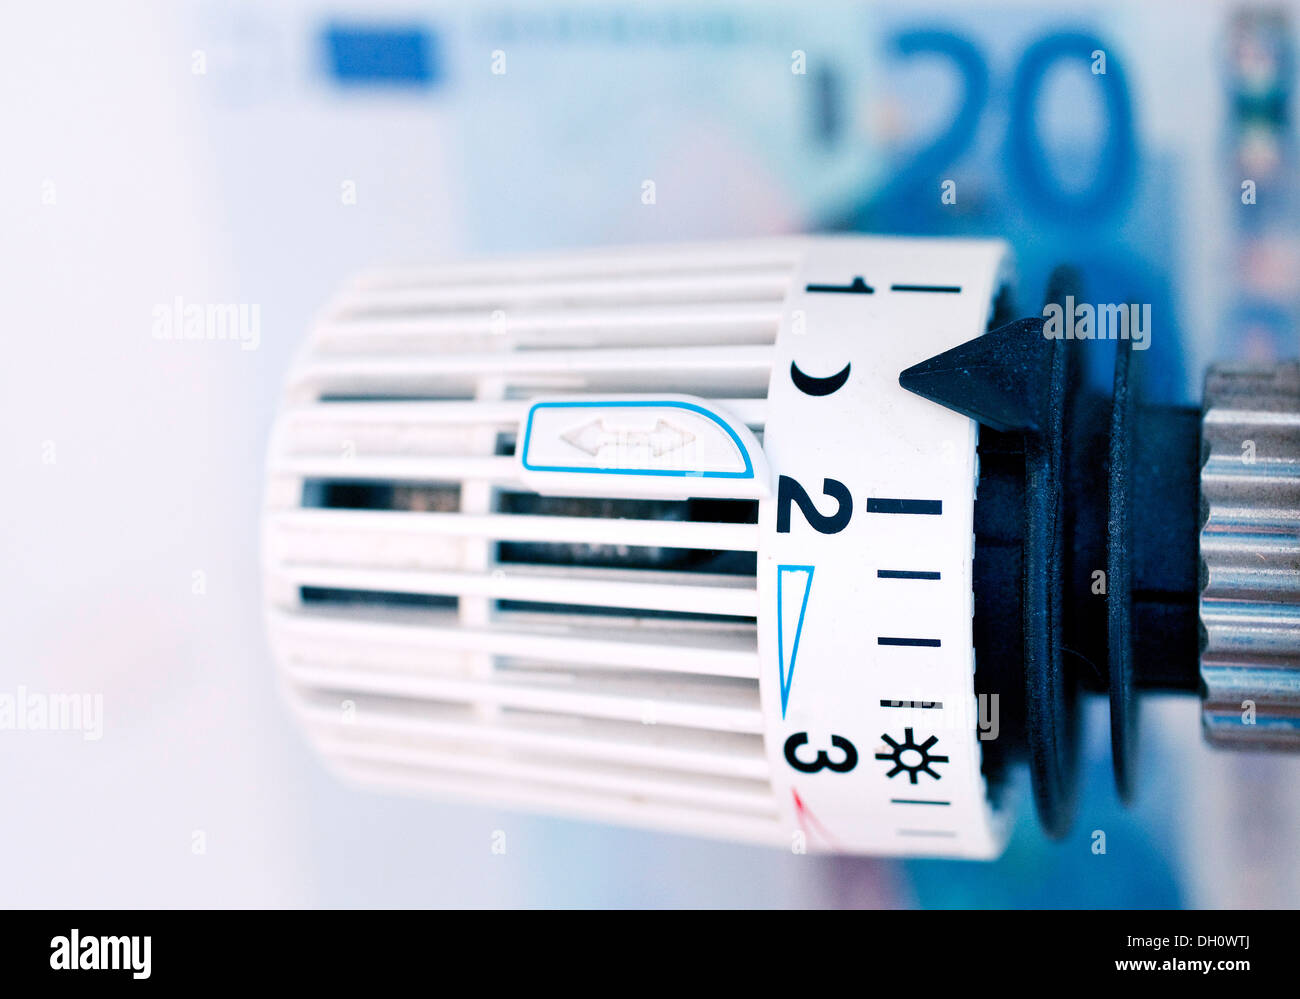 Termostato nella parte anteriore di una banconota in euro, immagine simbolica per spese di riscaldamento, Germania Foto Stock